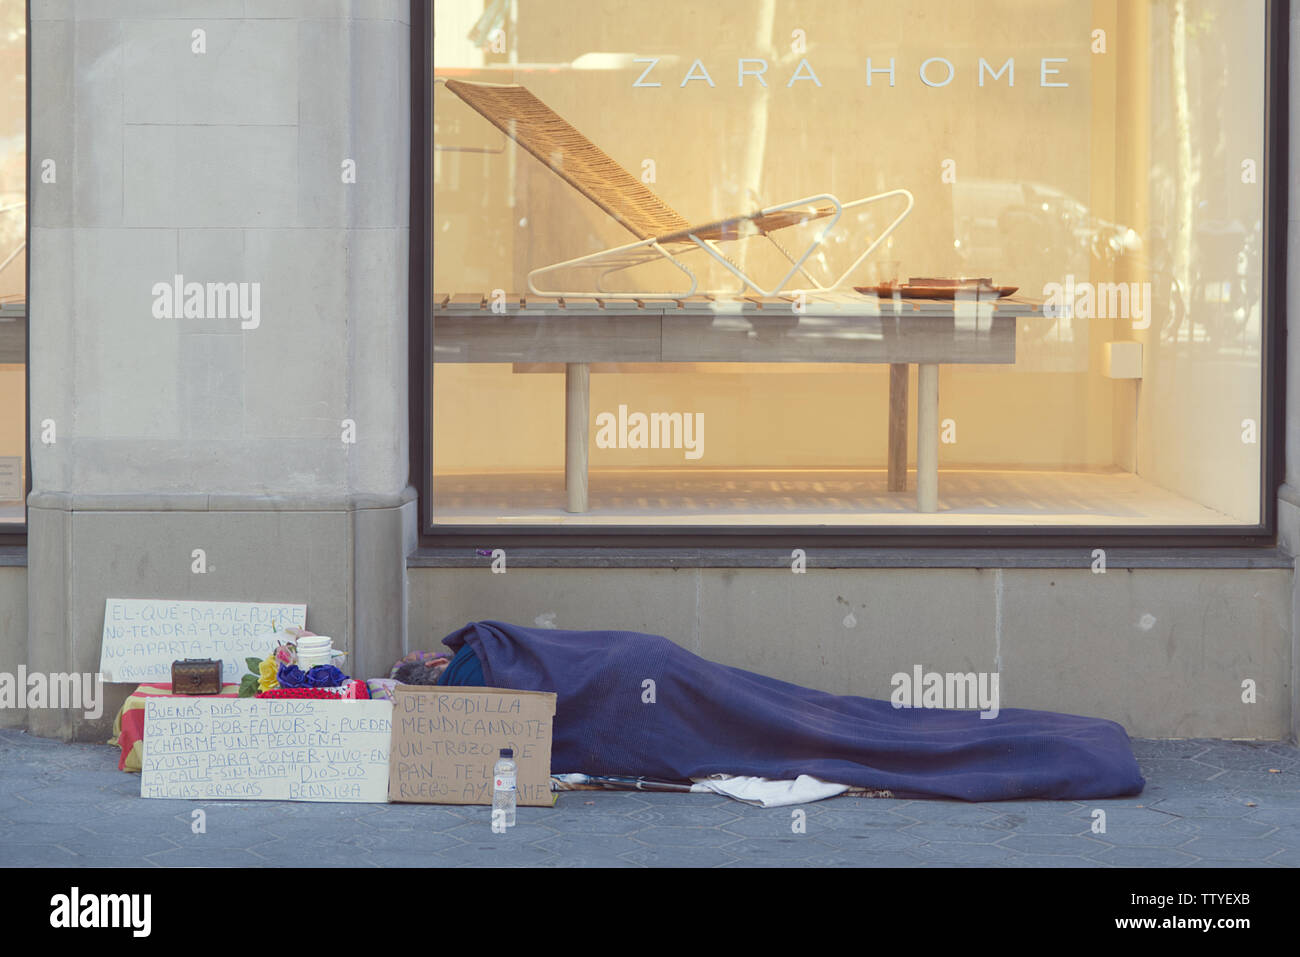 Barcelone, 18 juin 2019 : personne sans-abri dormant dans la rue en face d'une fenêtre dans la boutique Zara Home Paseig de Gracia, Barcelone Banque D'Images